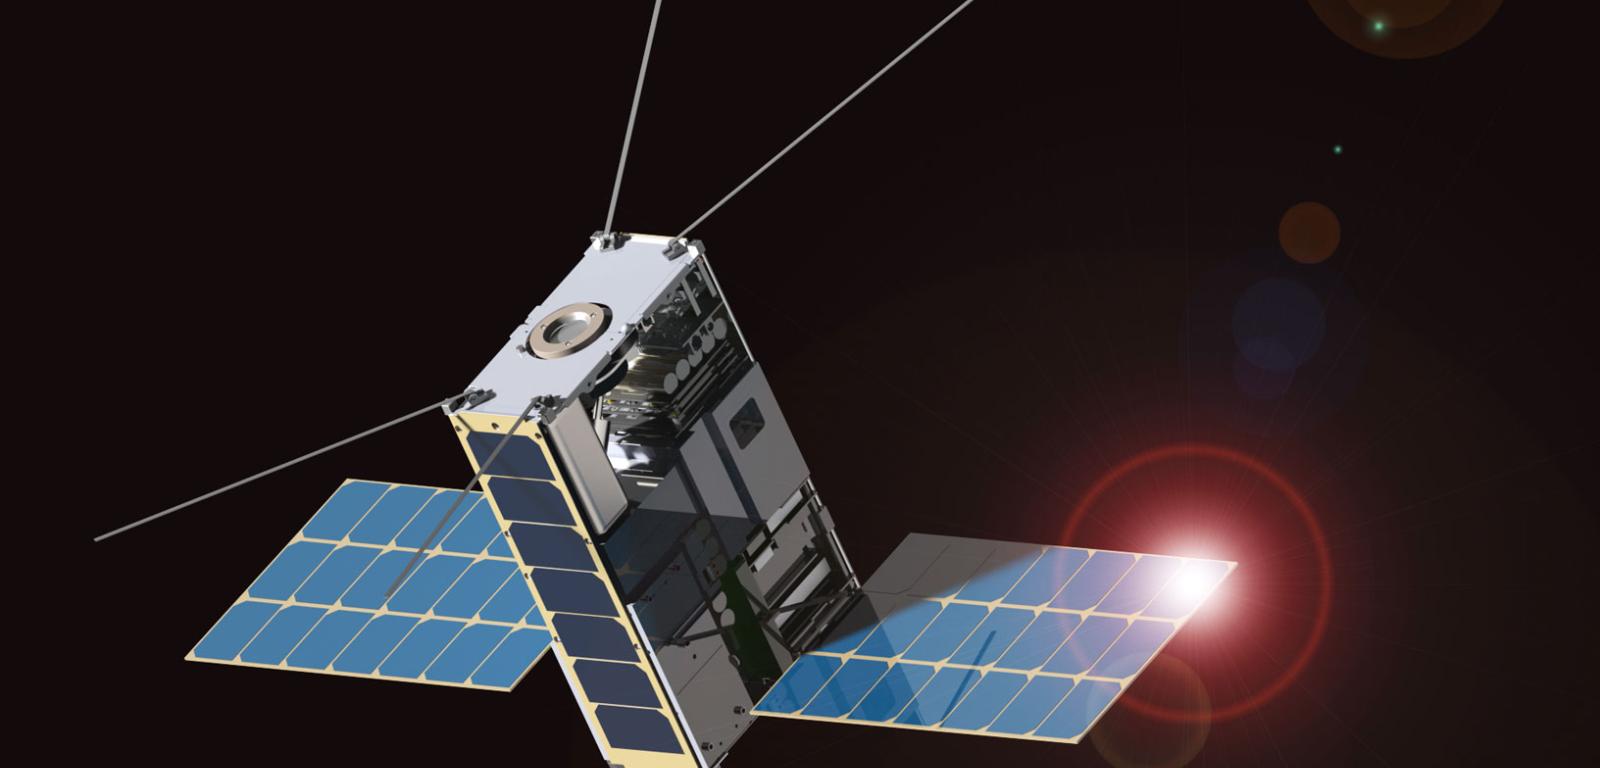 Lunar IceCube to przyszły CubeSat 6U. Celem jego misji będzie badanie pokładów lodu wodnego na powierzchni Księżyca.